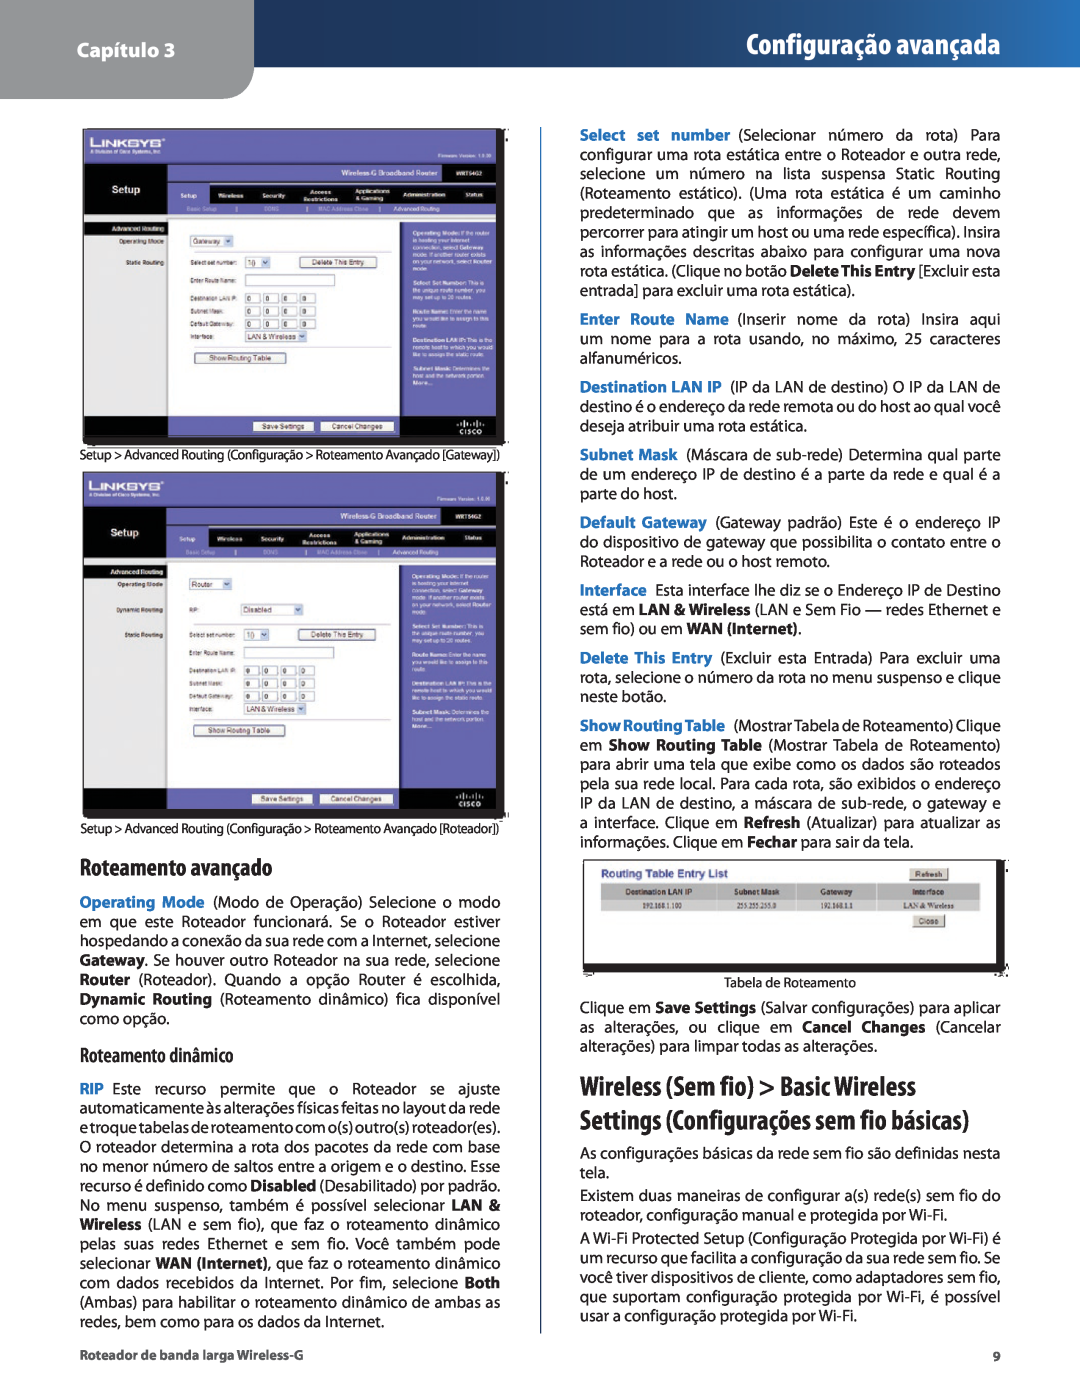 Cisco Systems WRT54G2 manual Roteamento avançado, Roteamento dinâmico, Configuração avançada, Capítulo 